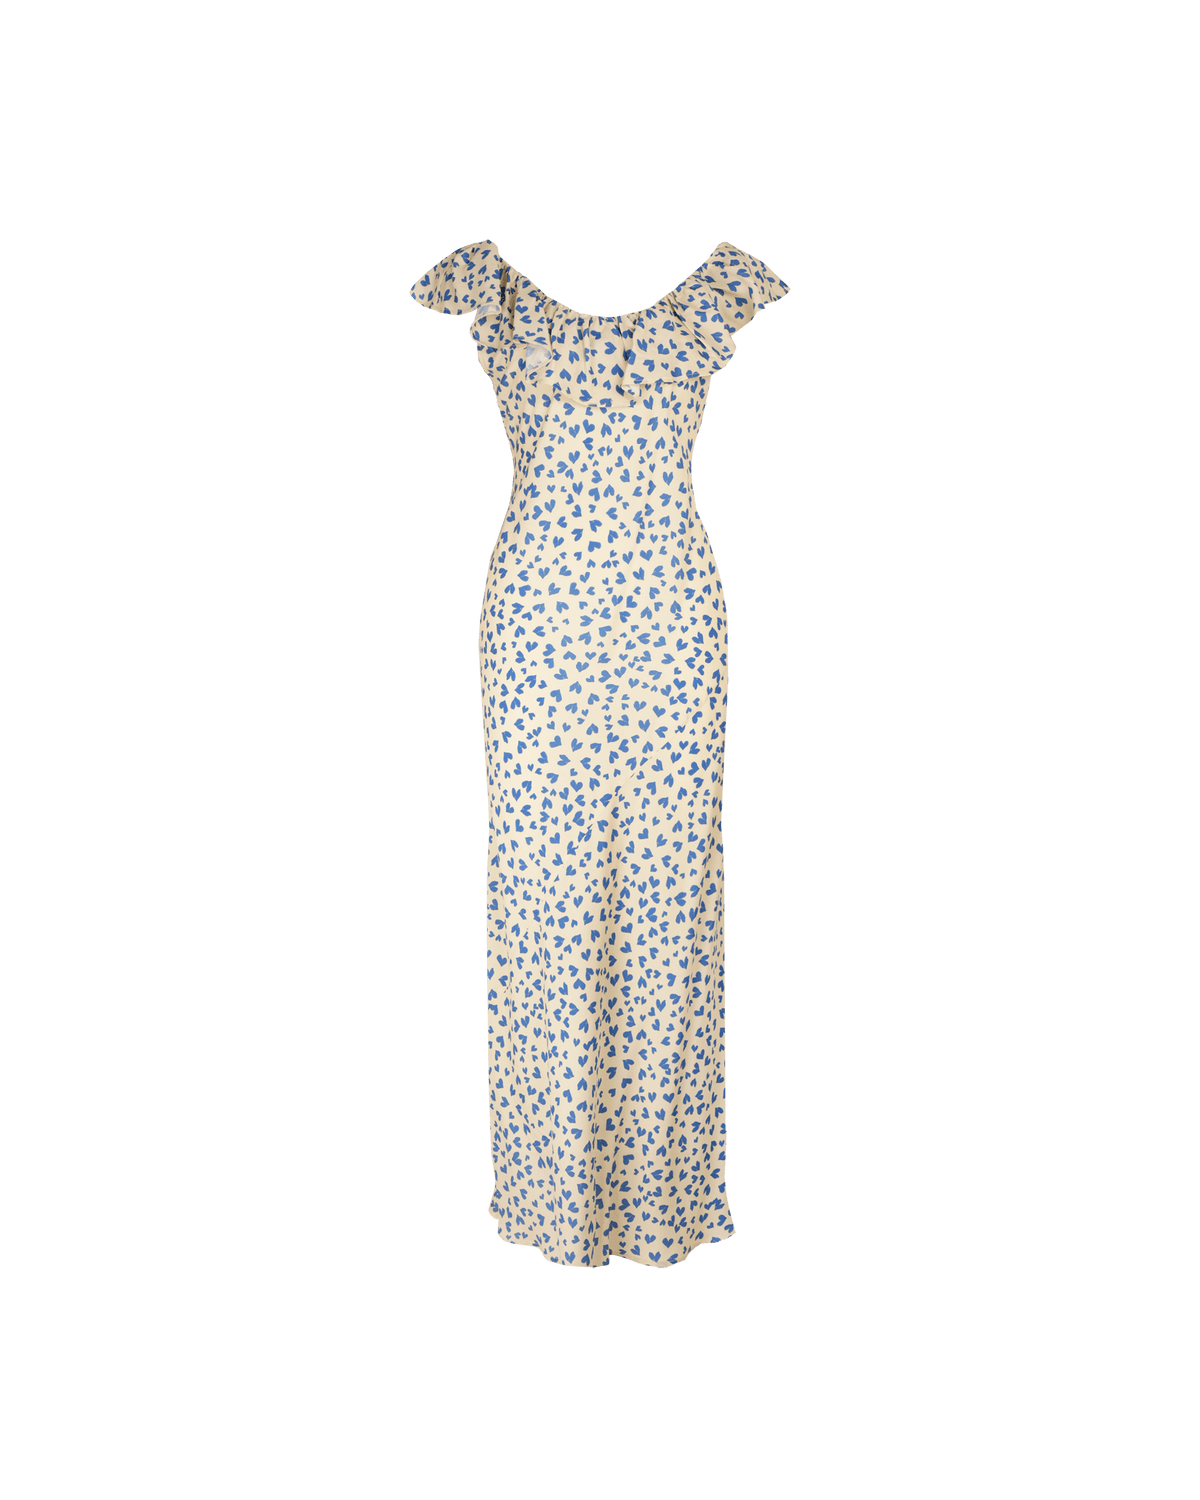 Hazel Ruffle Dress - Blue Scatter Hearts Dresses Ruby 